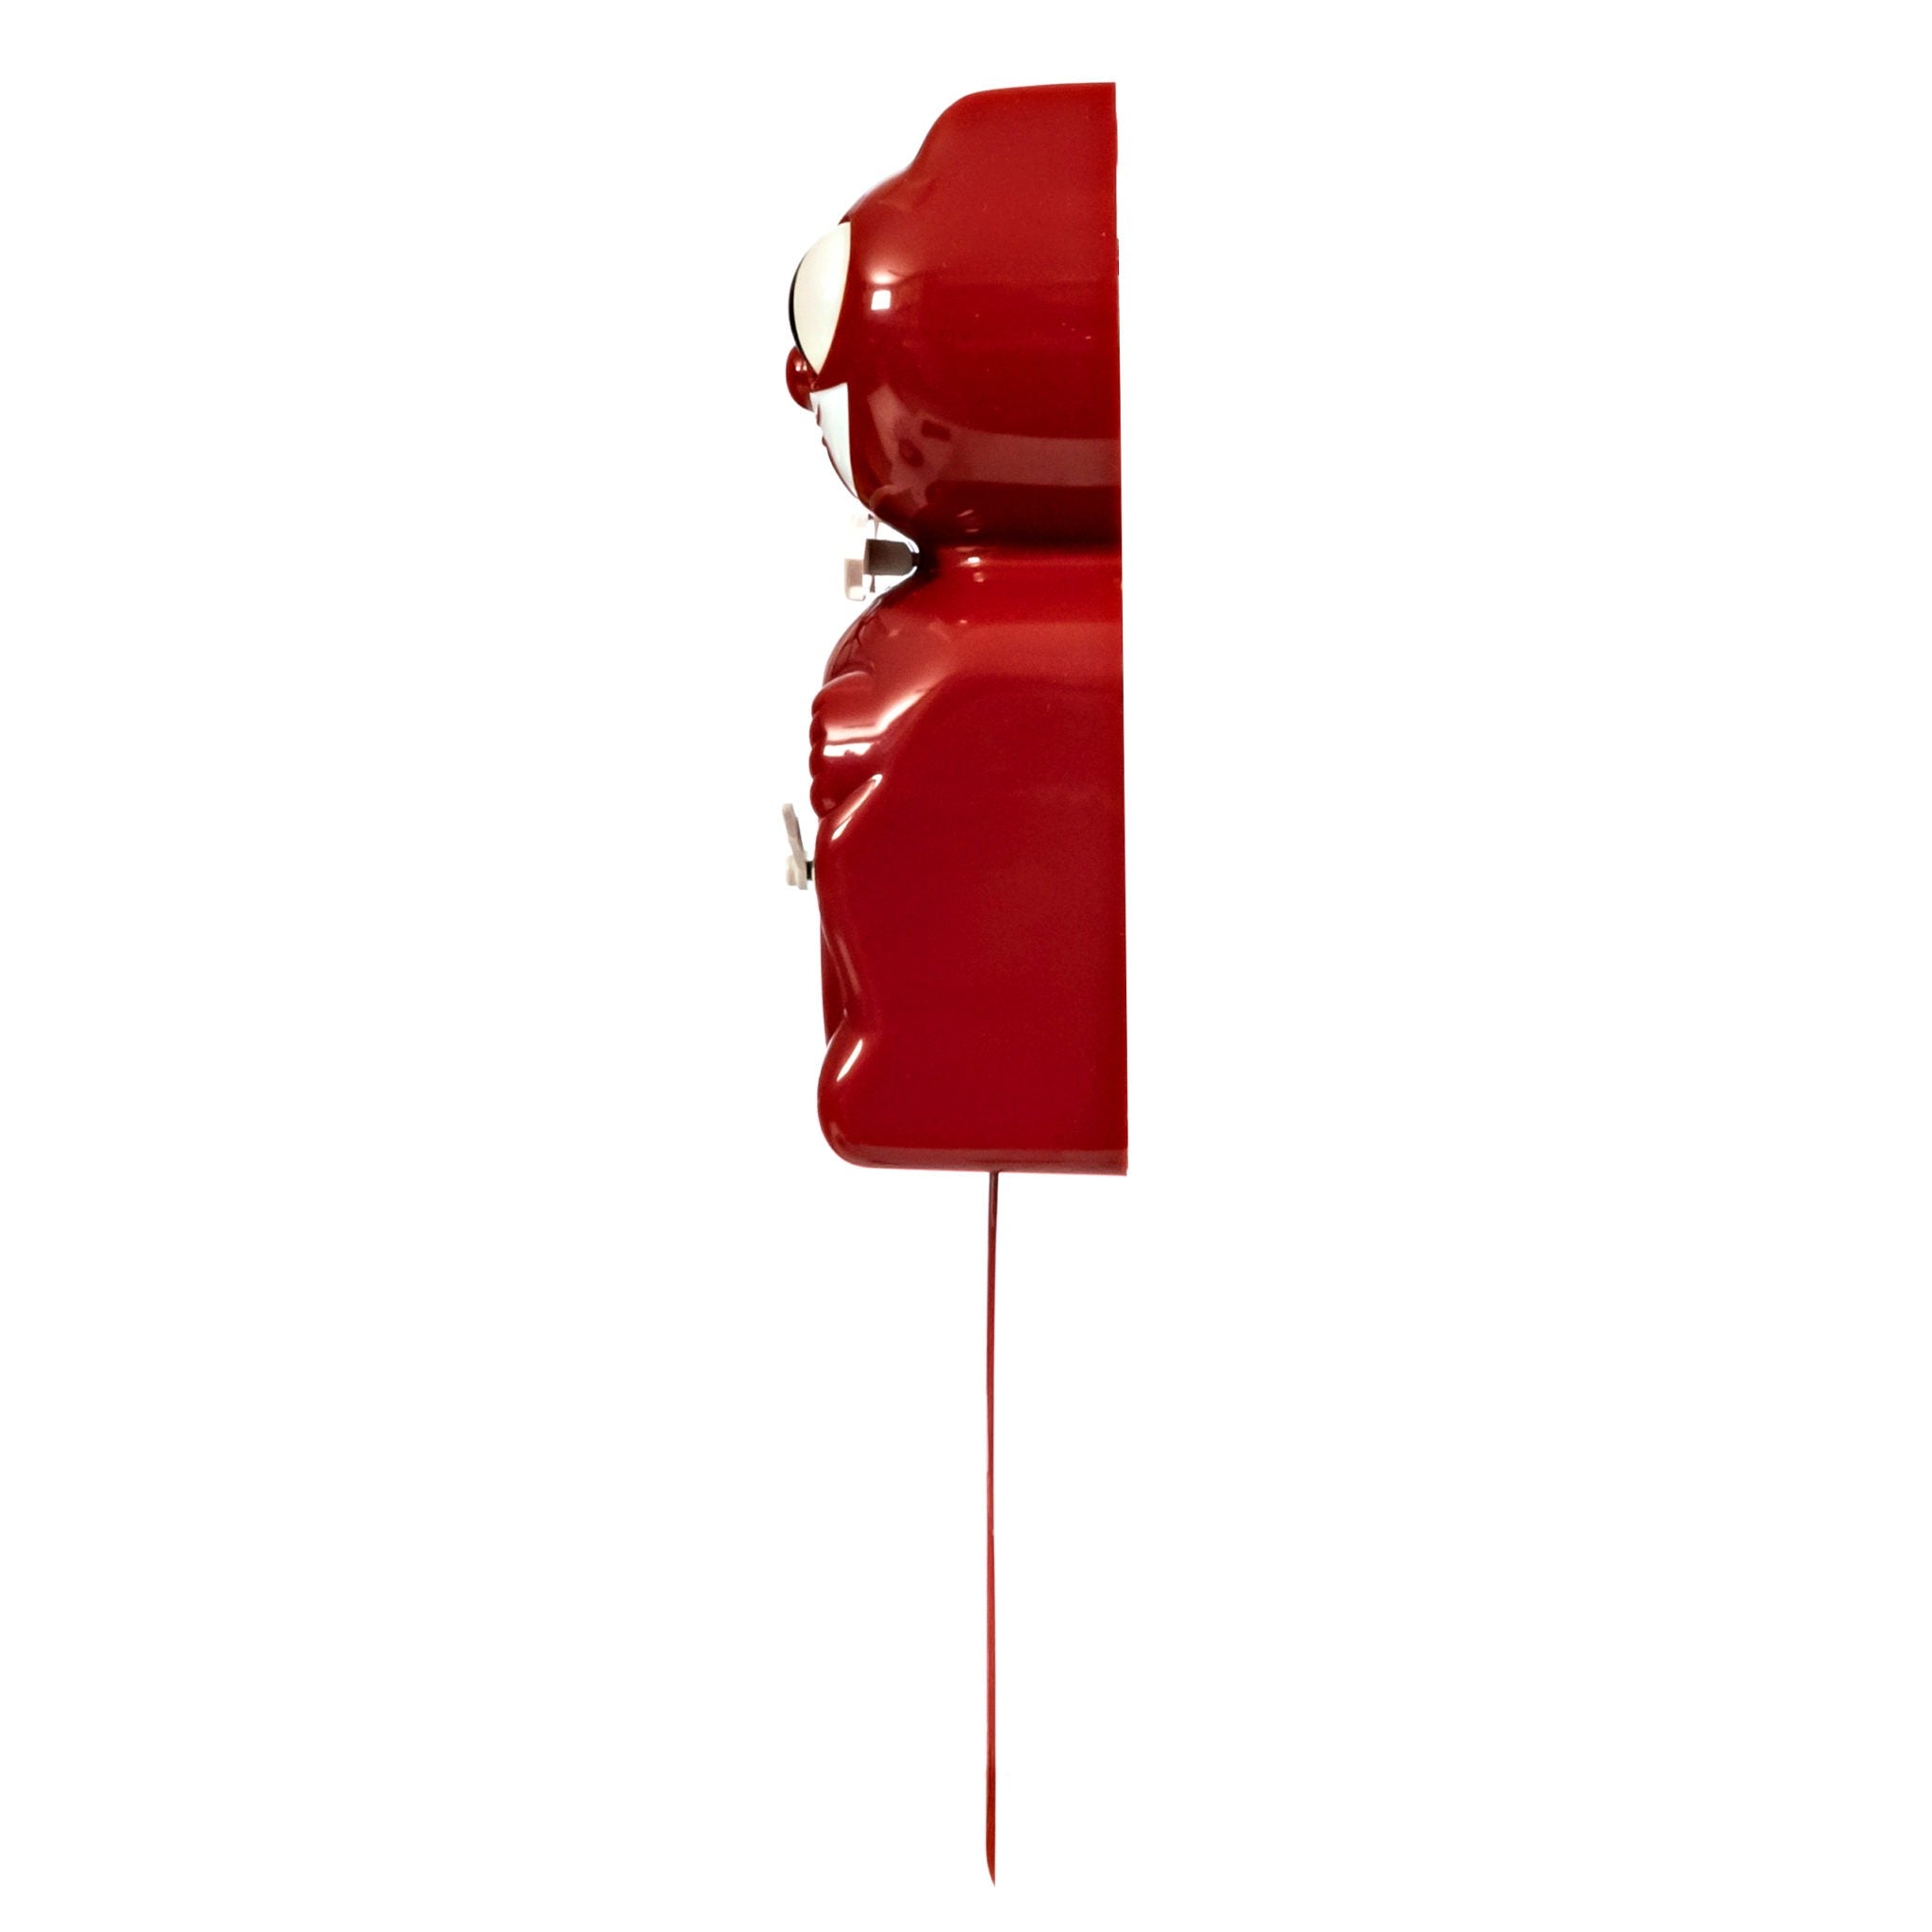 Classic Kit-Cat Klock – Cherry Red